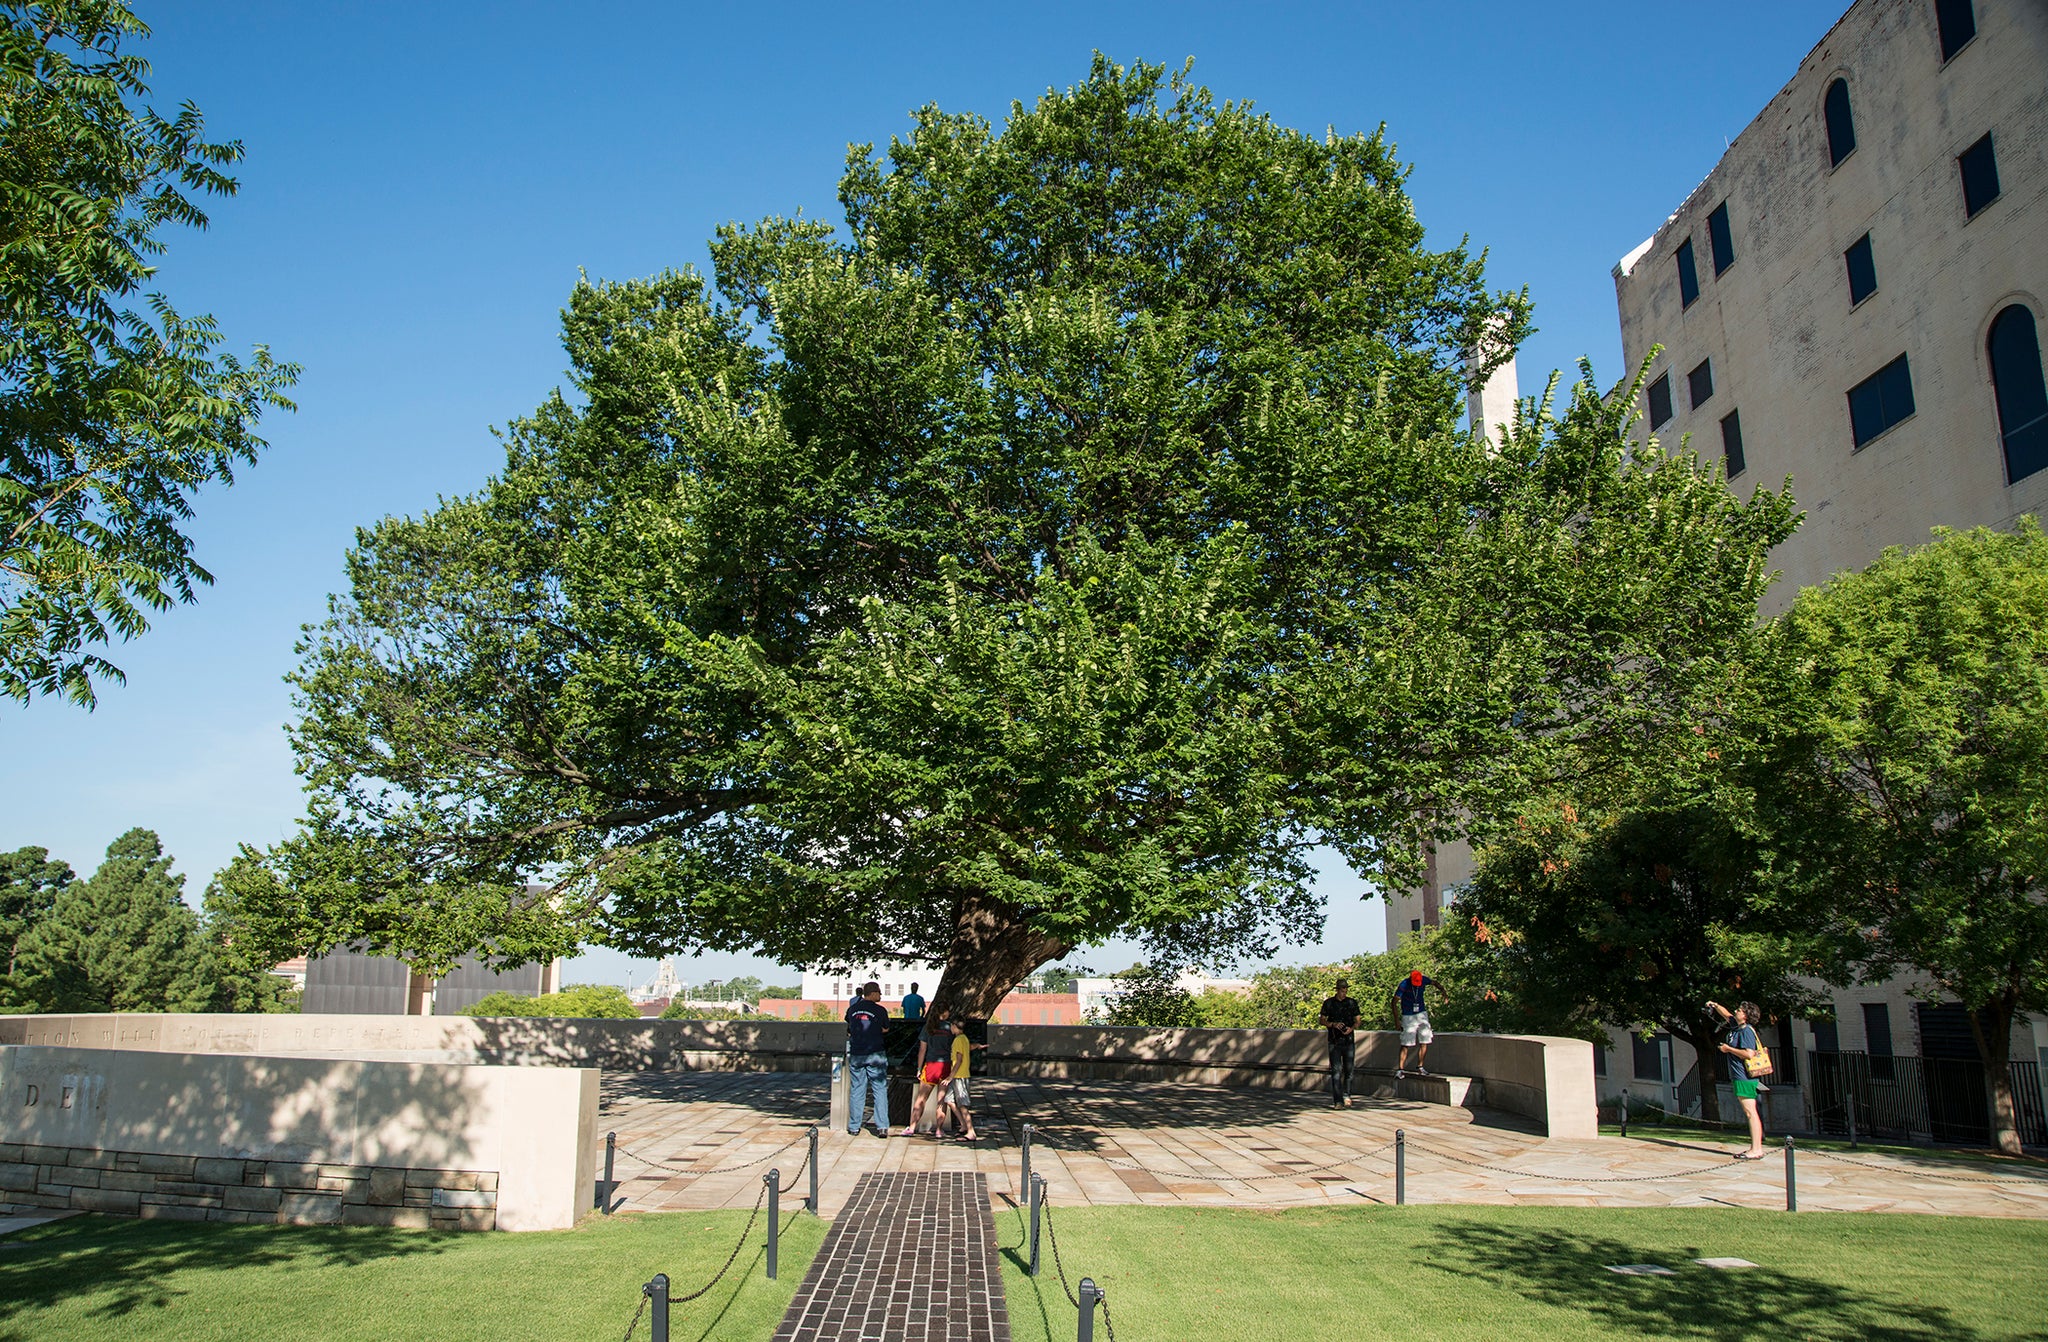 Survivor Tree (American Elm in Oklahoma City)